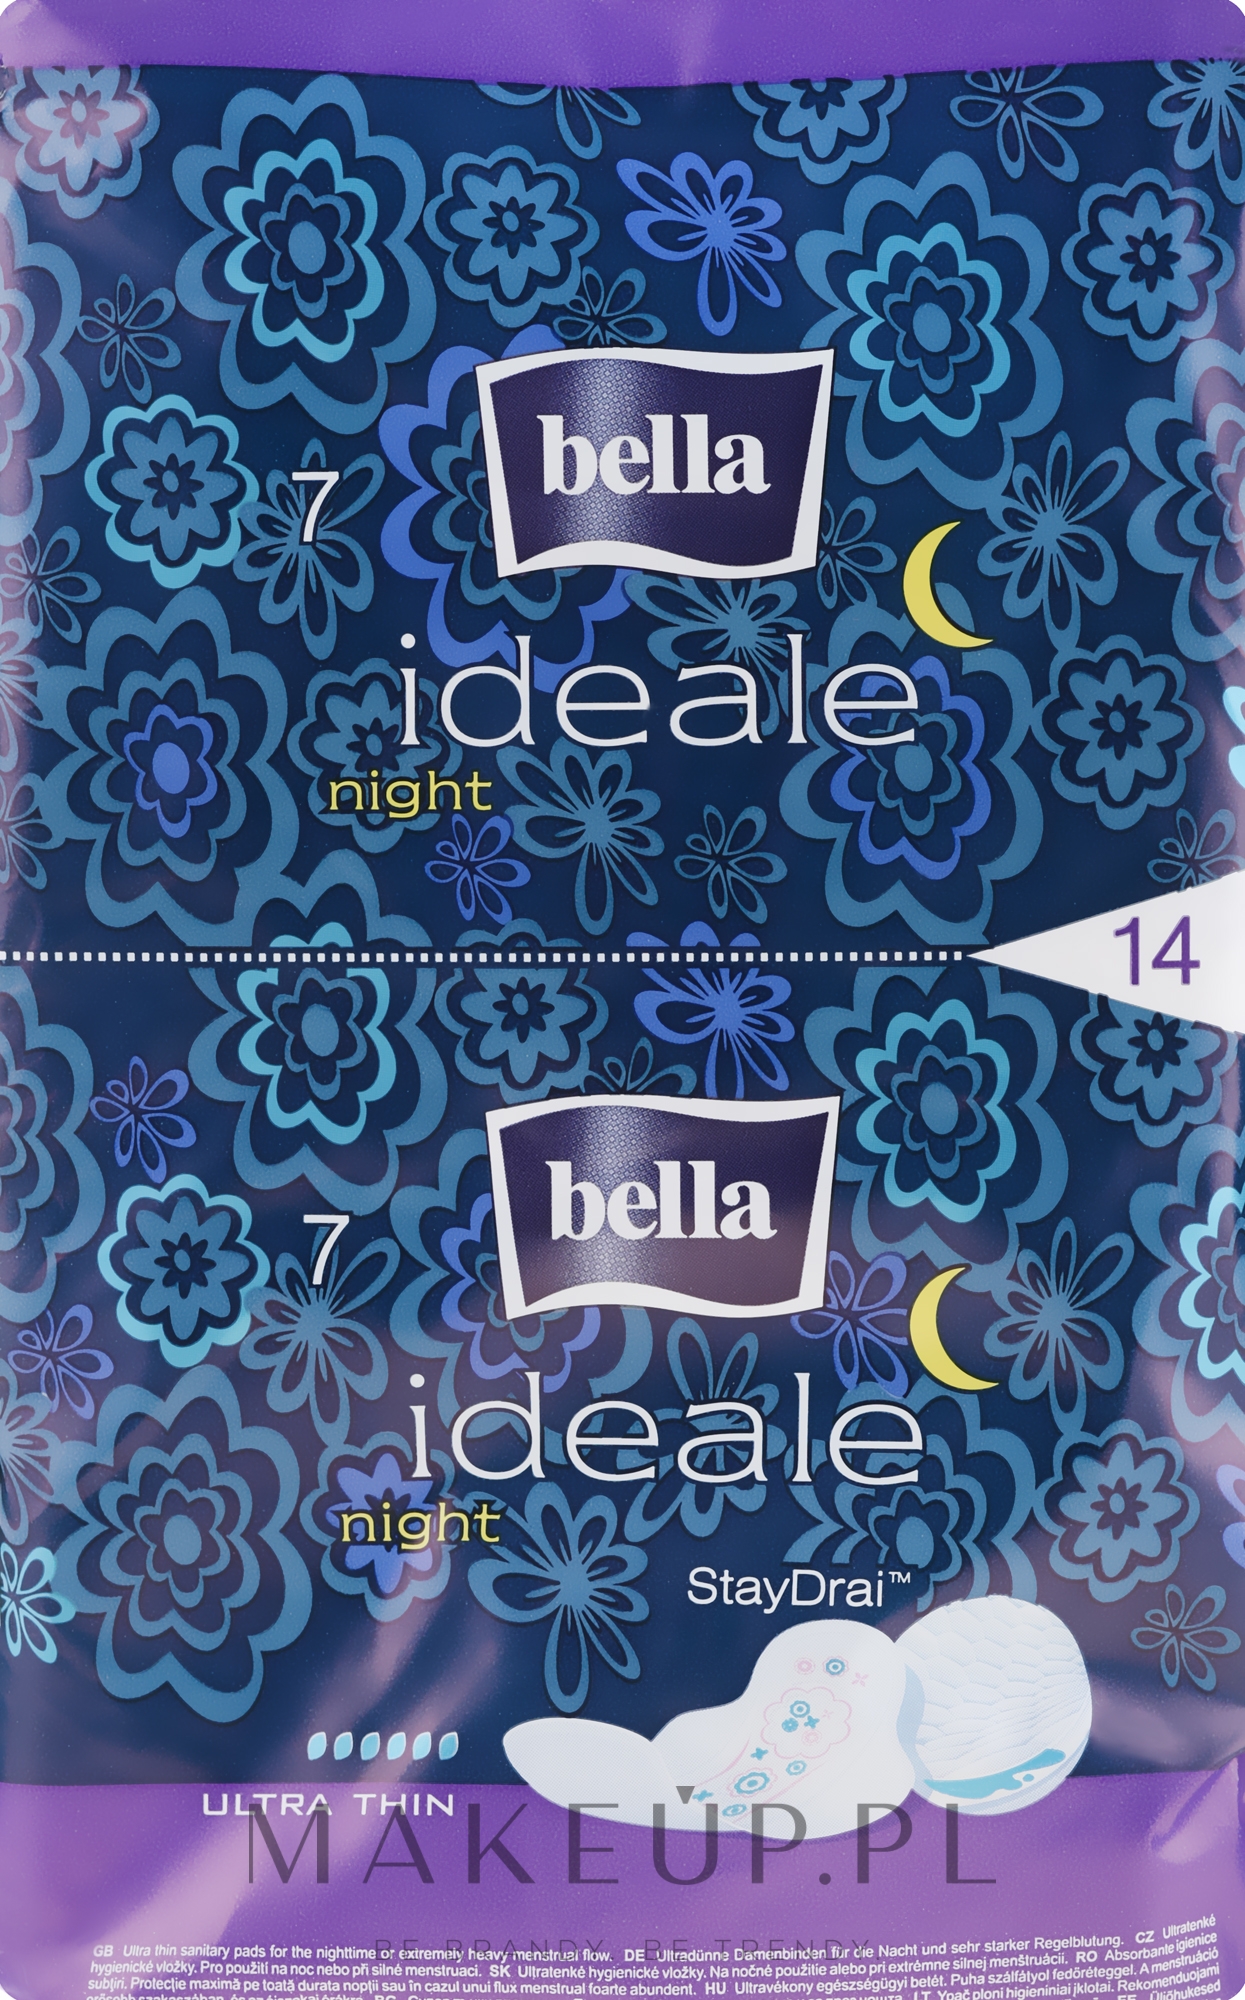 Podpaski, 14 szt. - Bella Ideale Night StayDrai — Zdjęcie 14 szt.